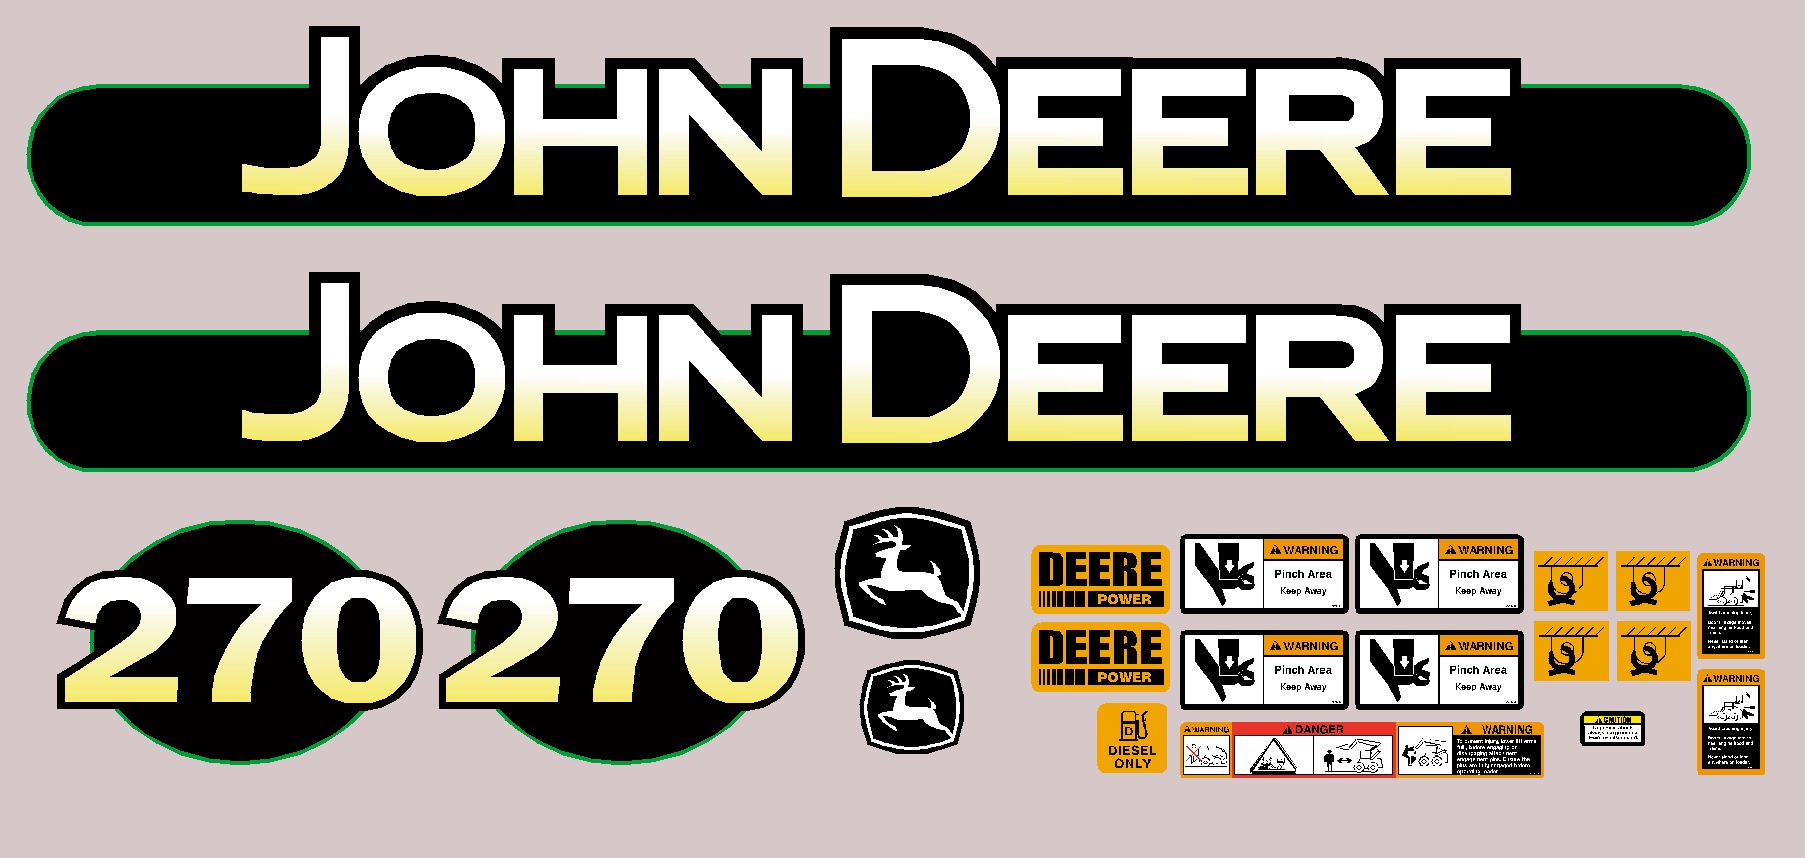 Deere Skid Steer Loaders 270 Decal Packages